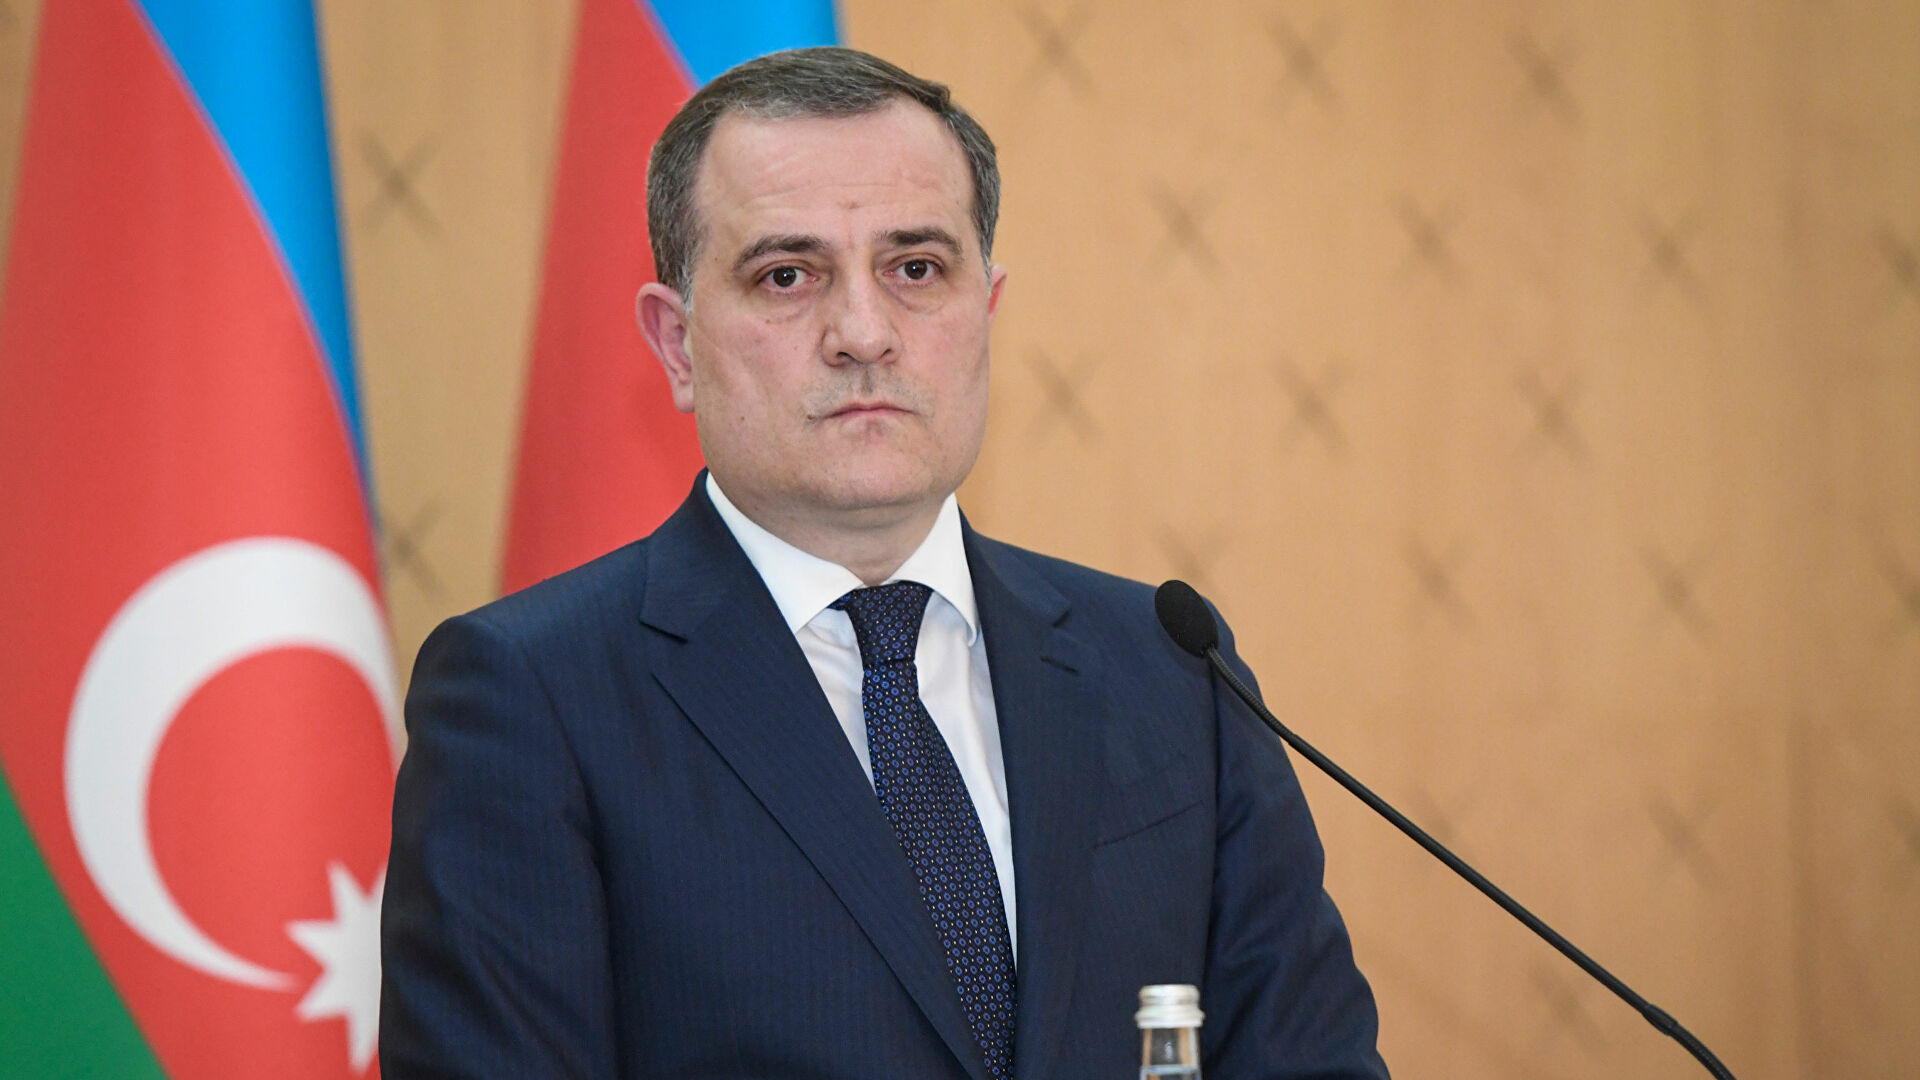 Джейхун Байрамов: После 2020 года позиция Франции по отношению к Азербайджану изменилась на 180 градусов